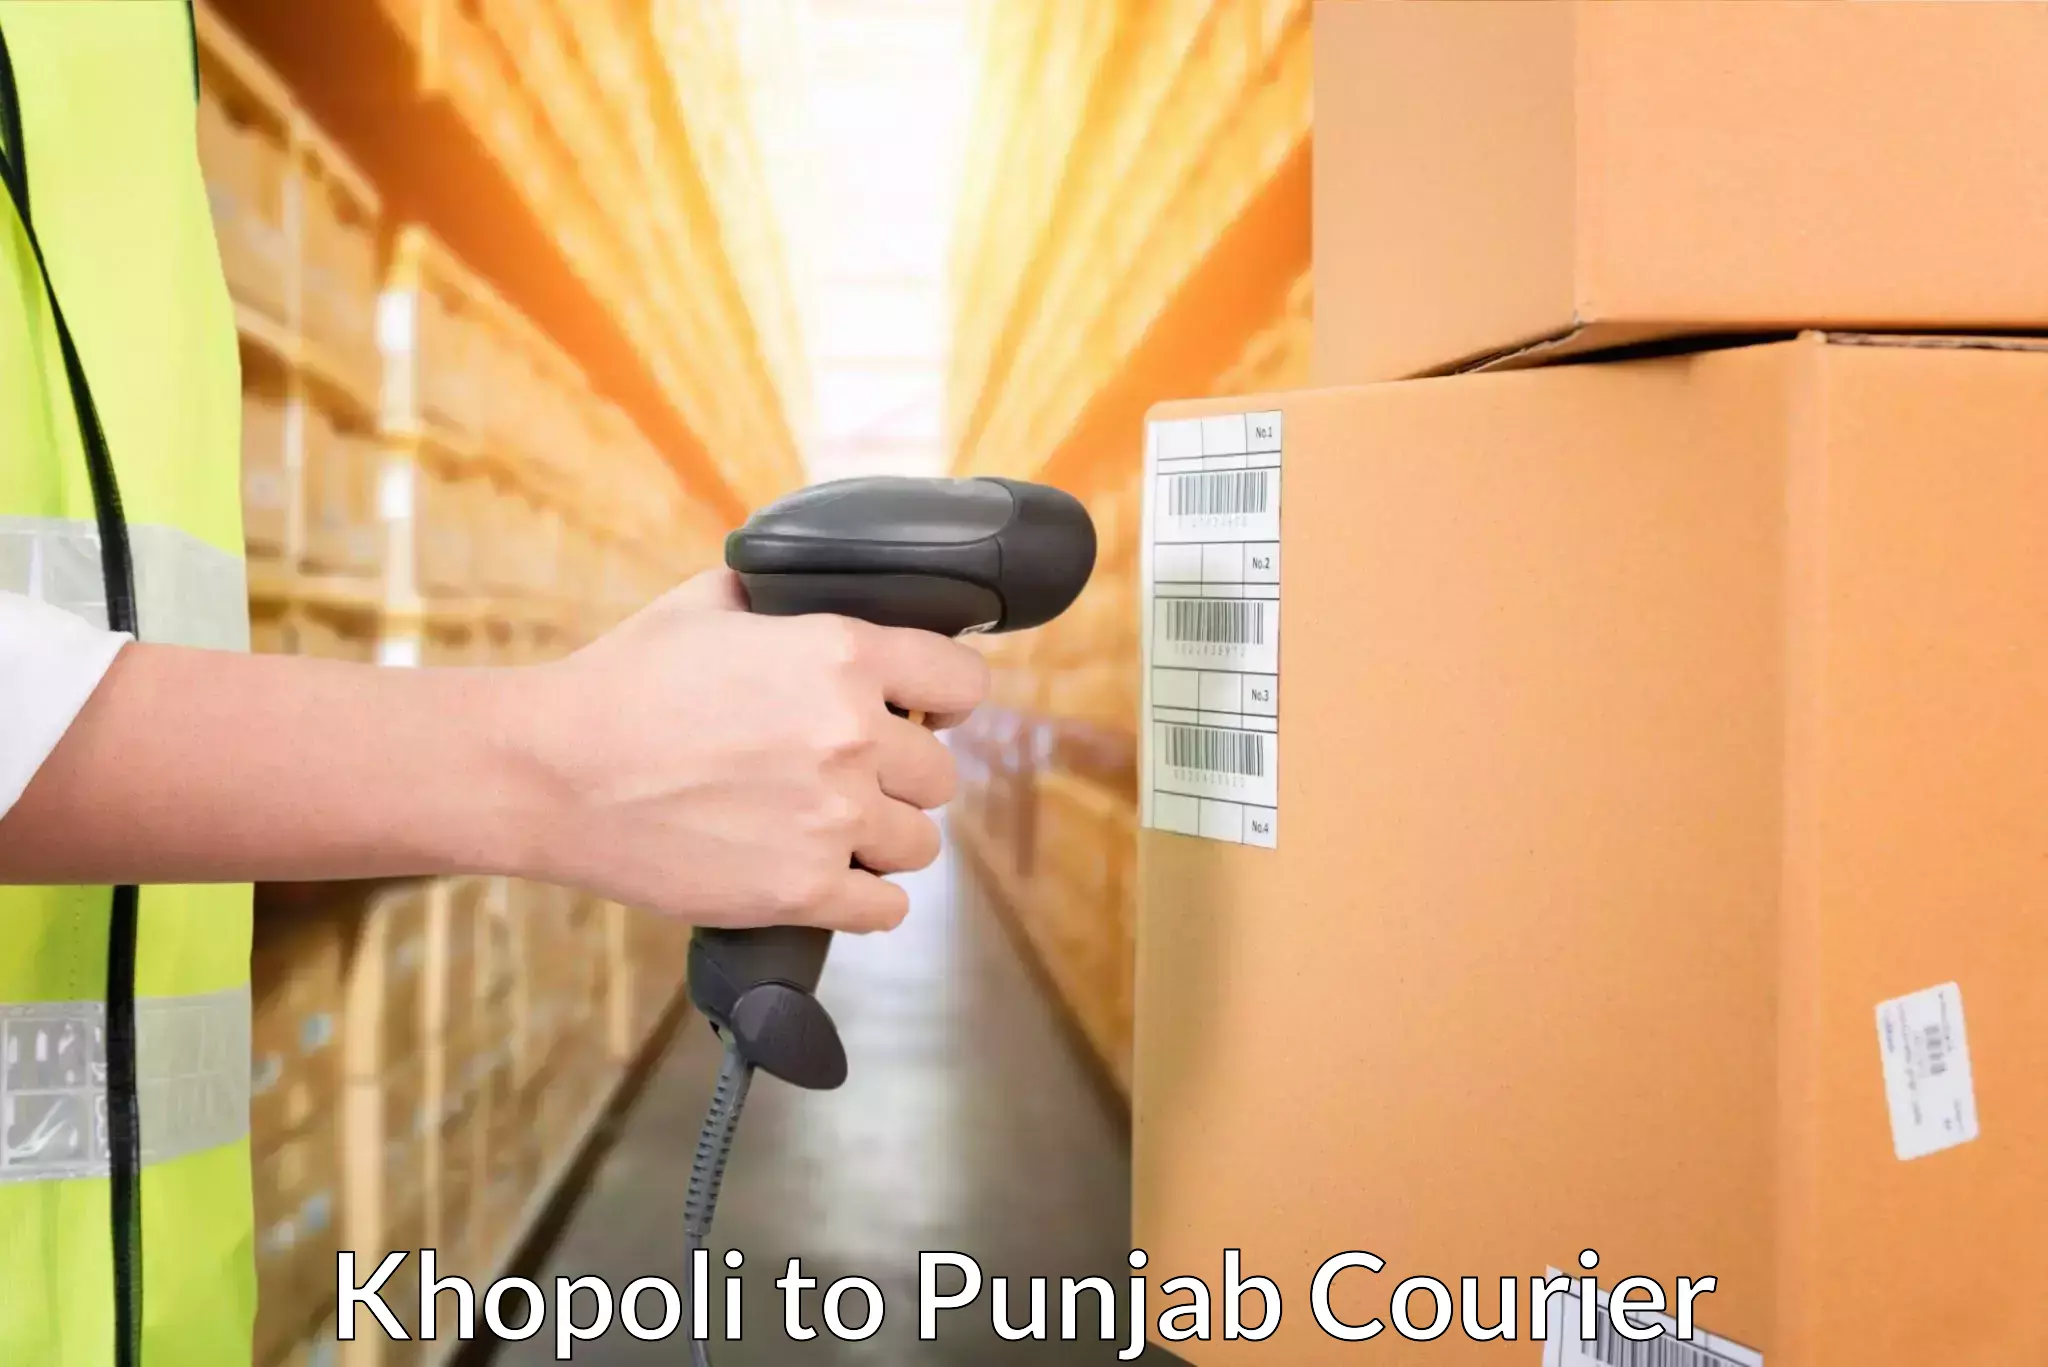 Efficient cargo handling Khopoli to Zirakpur